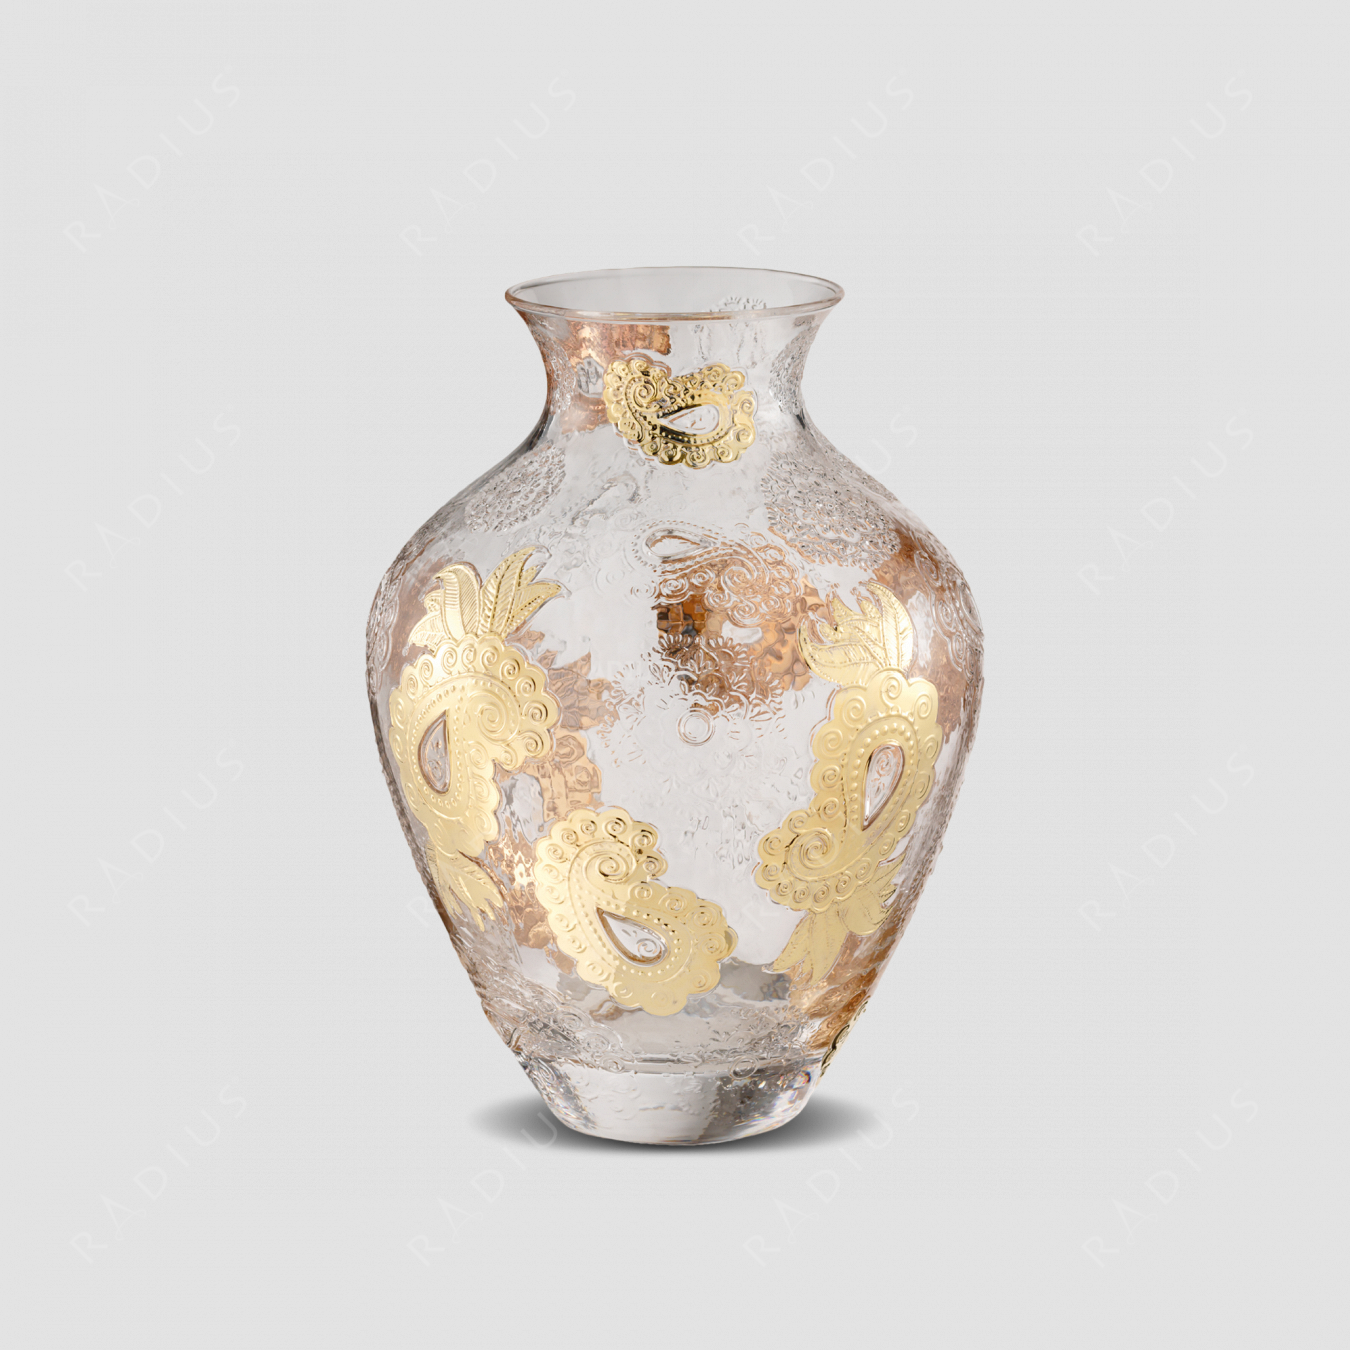 Стеклянная ваза для цветов, диаметр: 22,5 см, высота: 30,5 см, материал: стекло, цвет золото, серия Pashmina, IVV (Italy), Италия